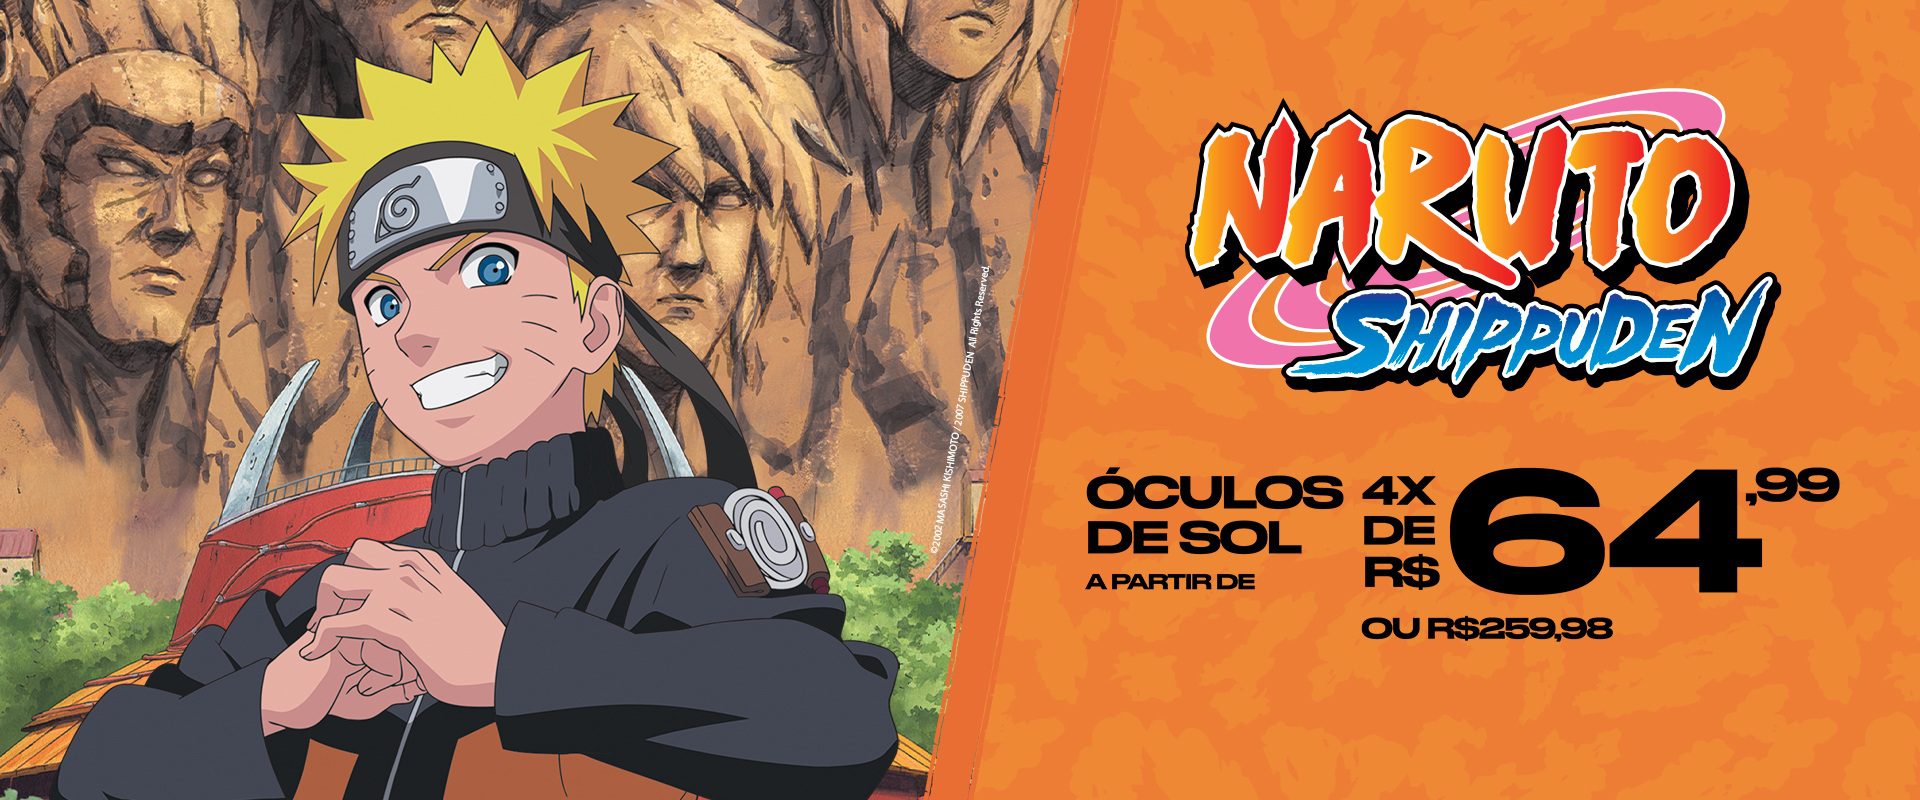 Chilli Beans lança coleção limitada sobre o universo de Naruto Shippuden -  Tô Na Fama! - IG